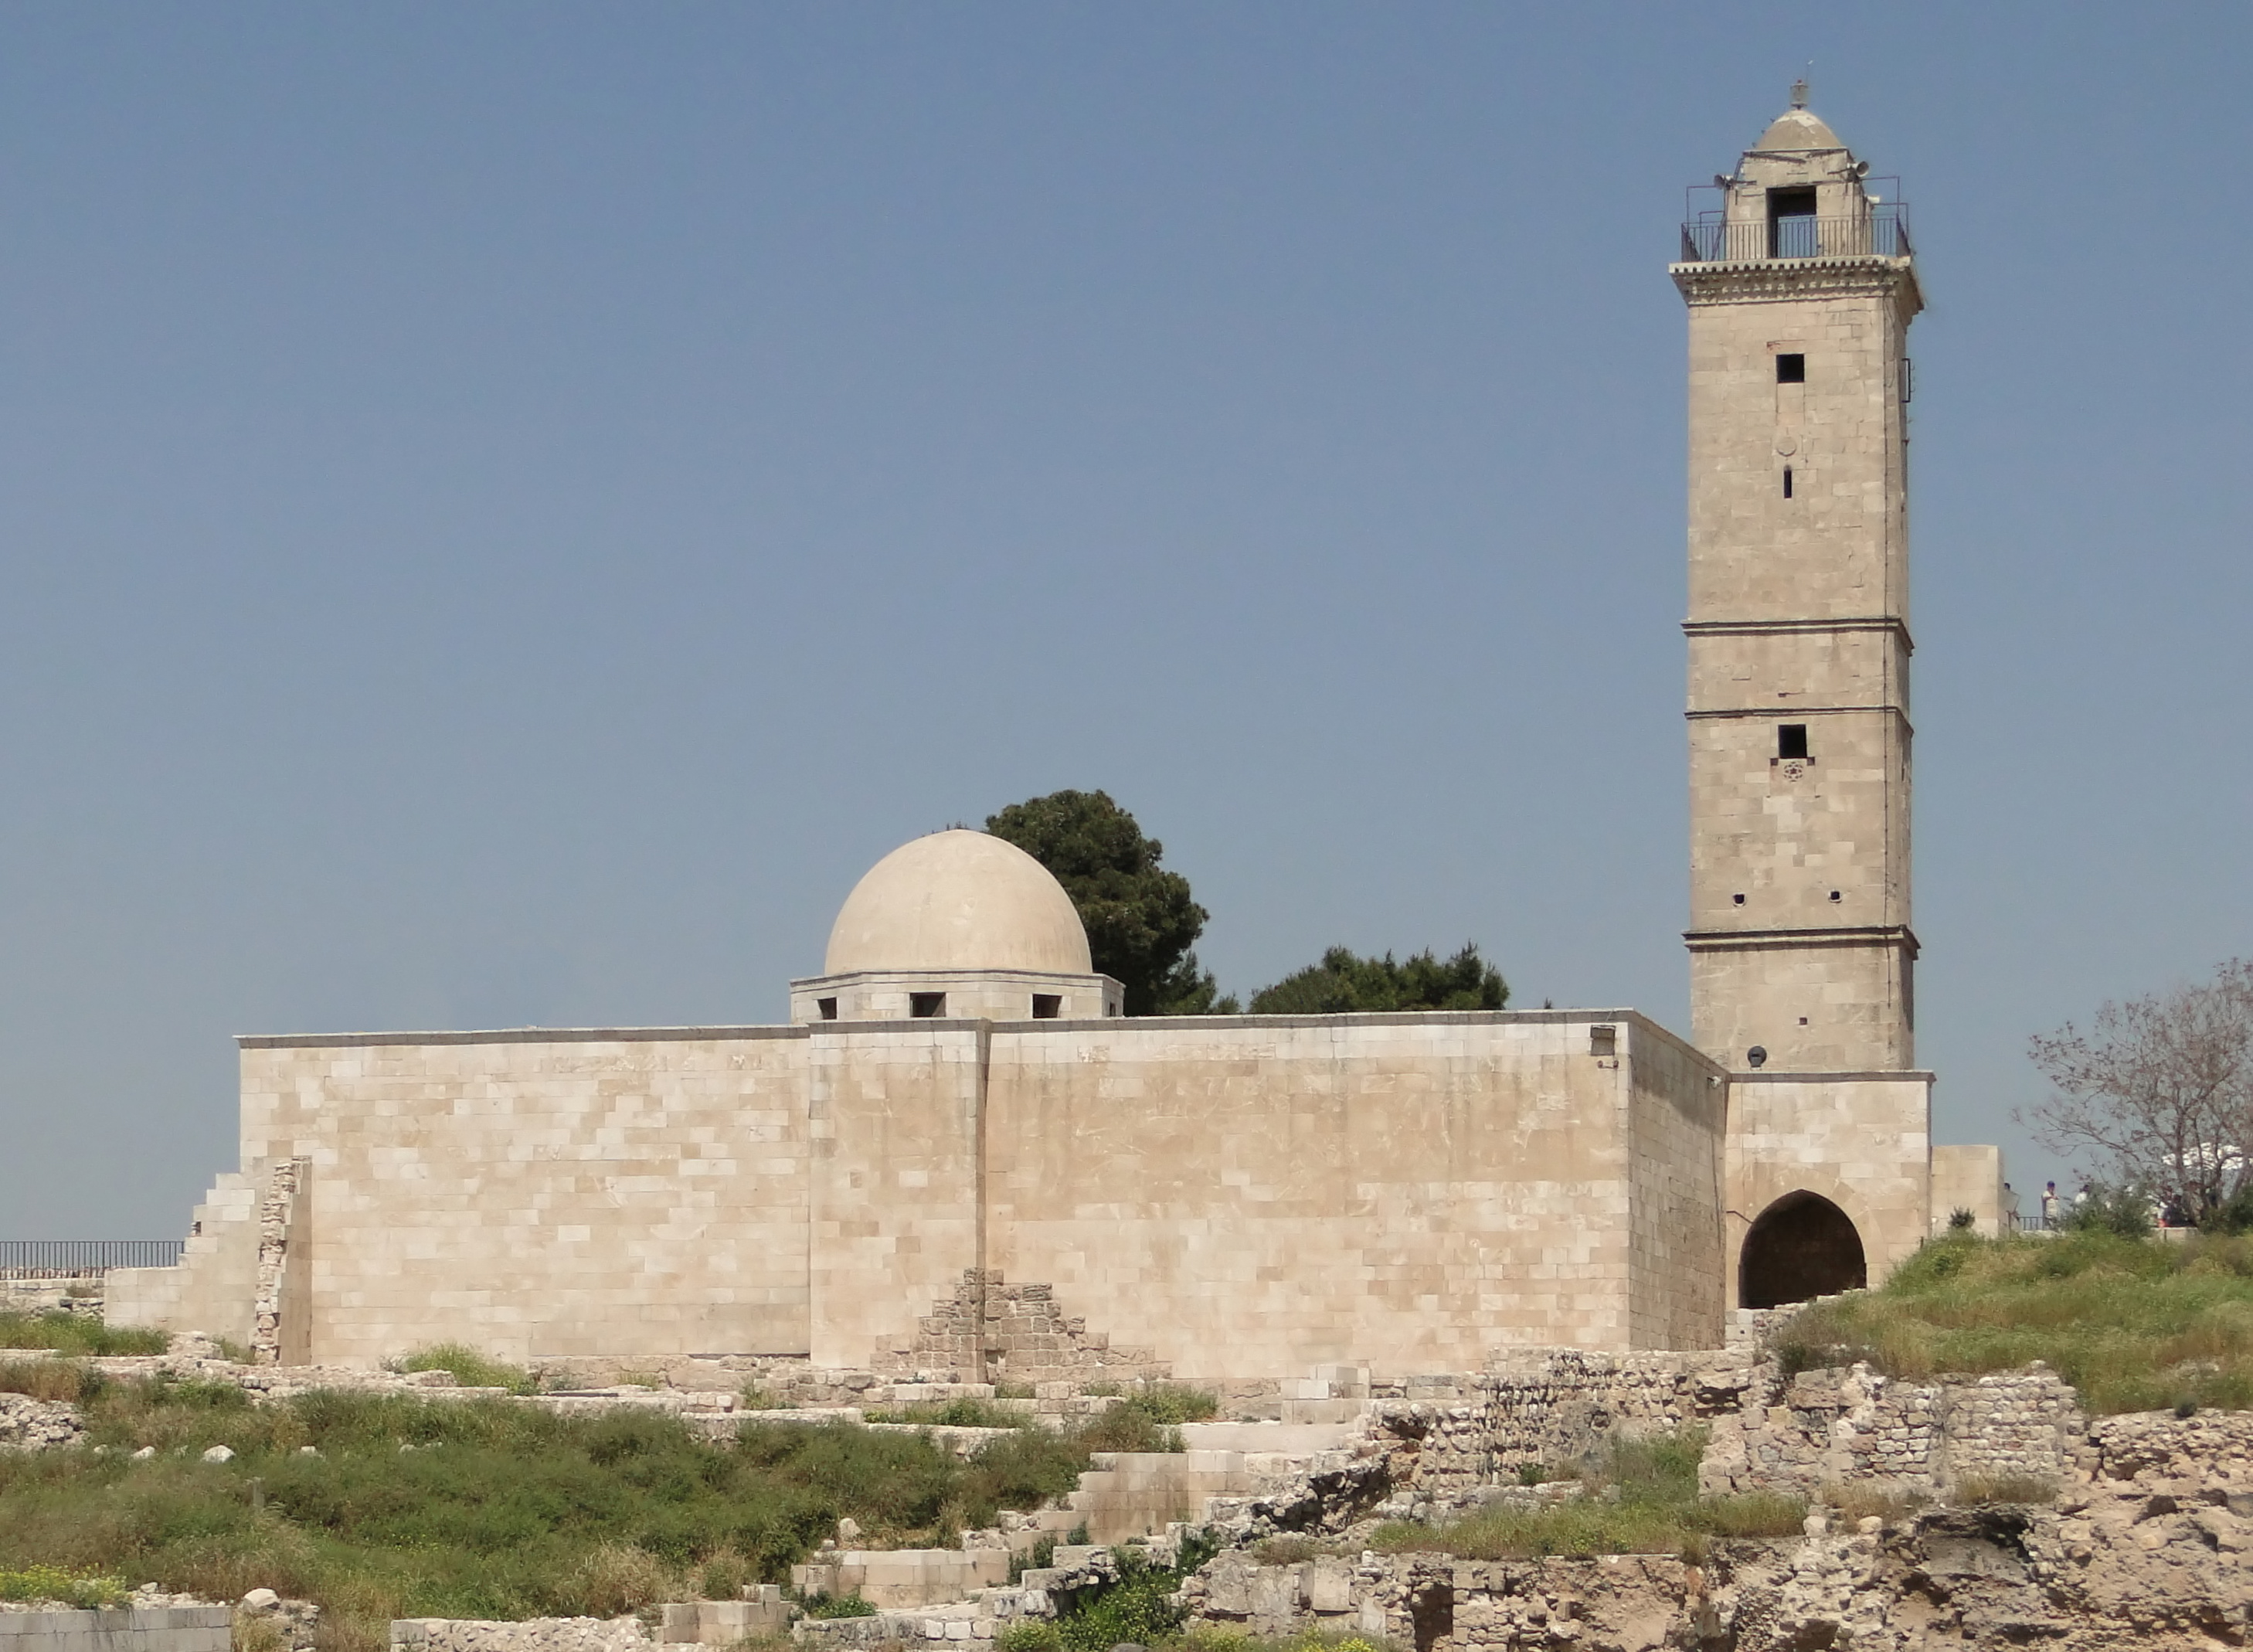 Aleppo Citadel 13 - Great Mosque